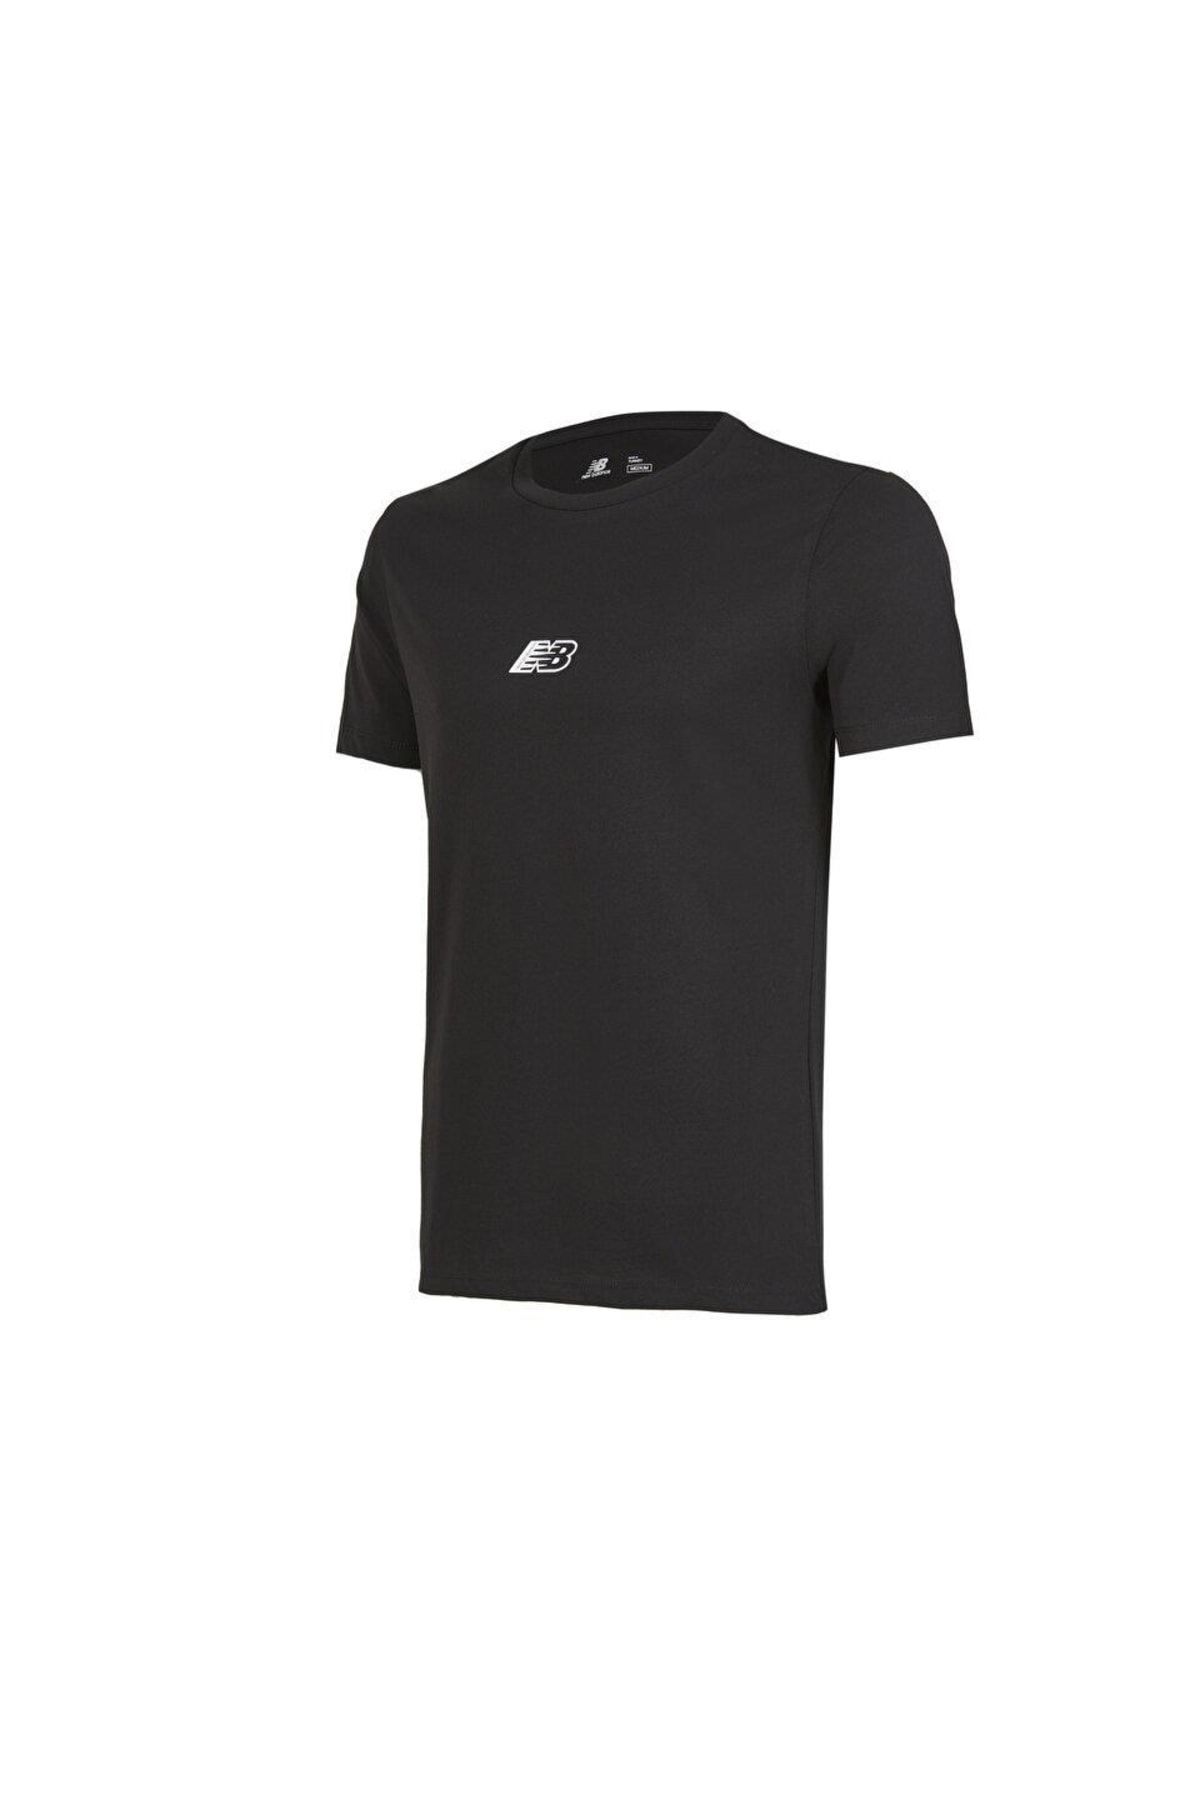 New Balance Erkek Siyah T-shirt Mnt1347-bk